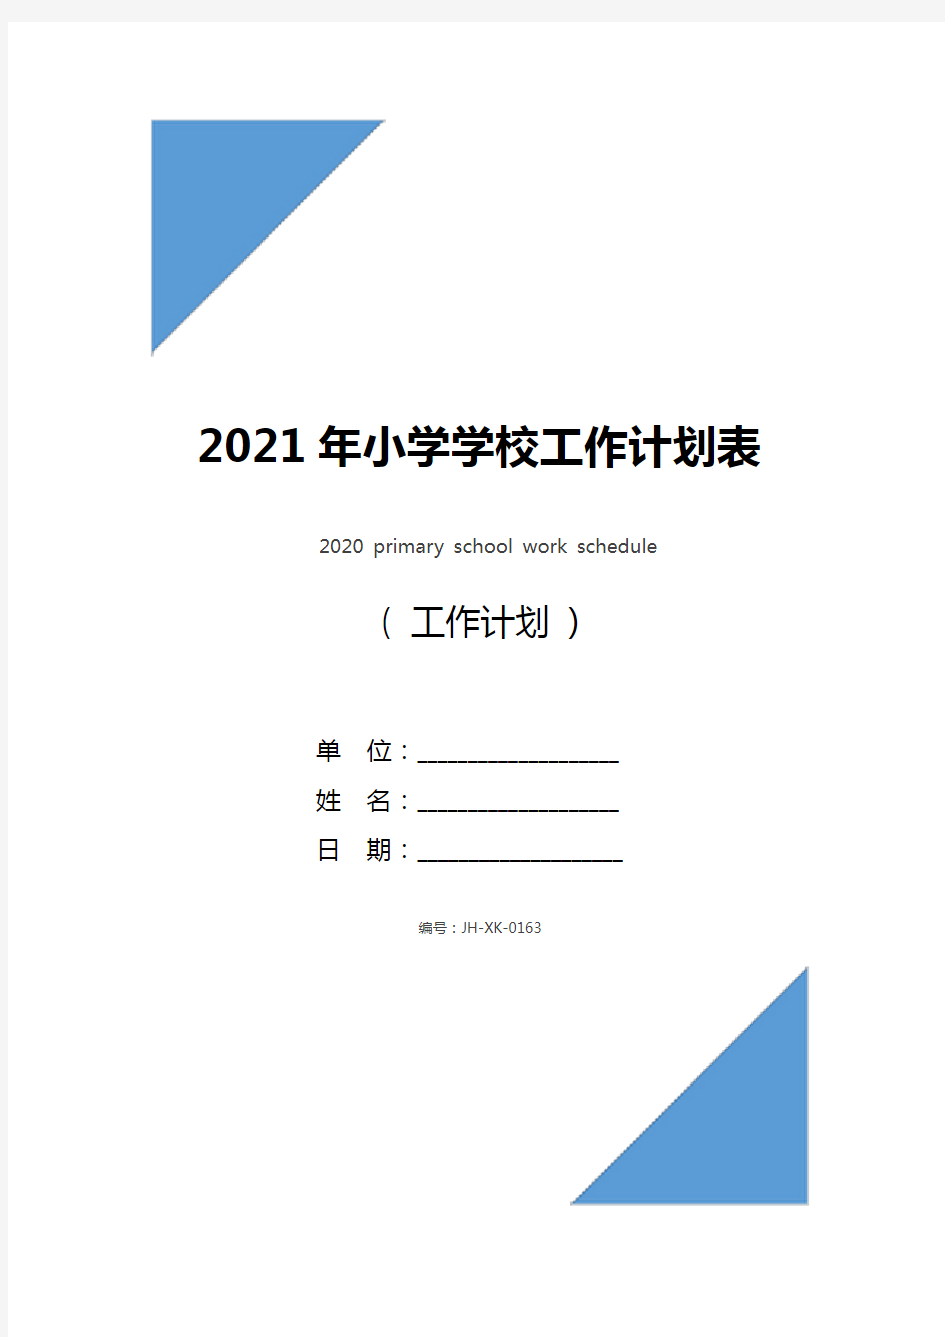 2021年小学学校工作计划表(新版)